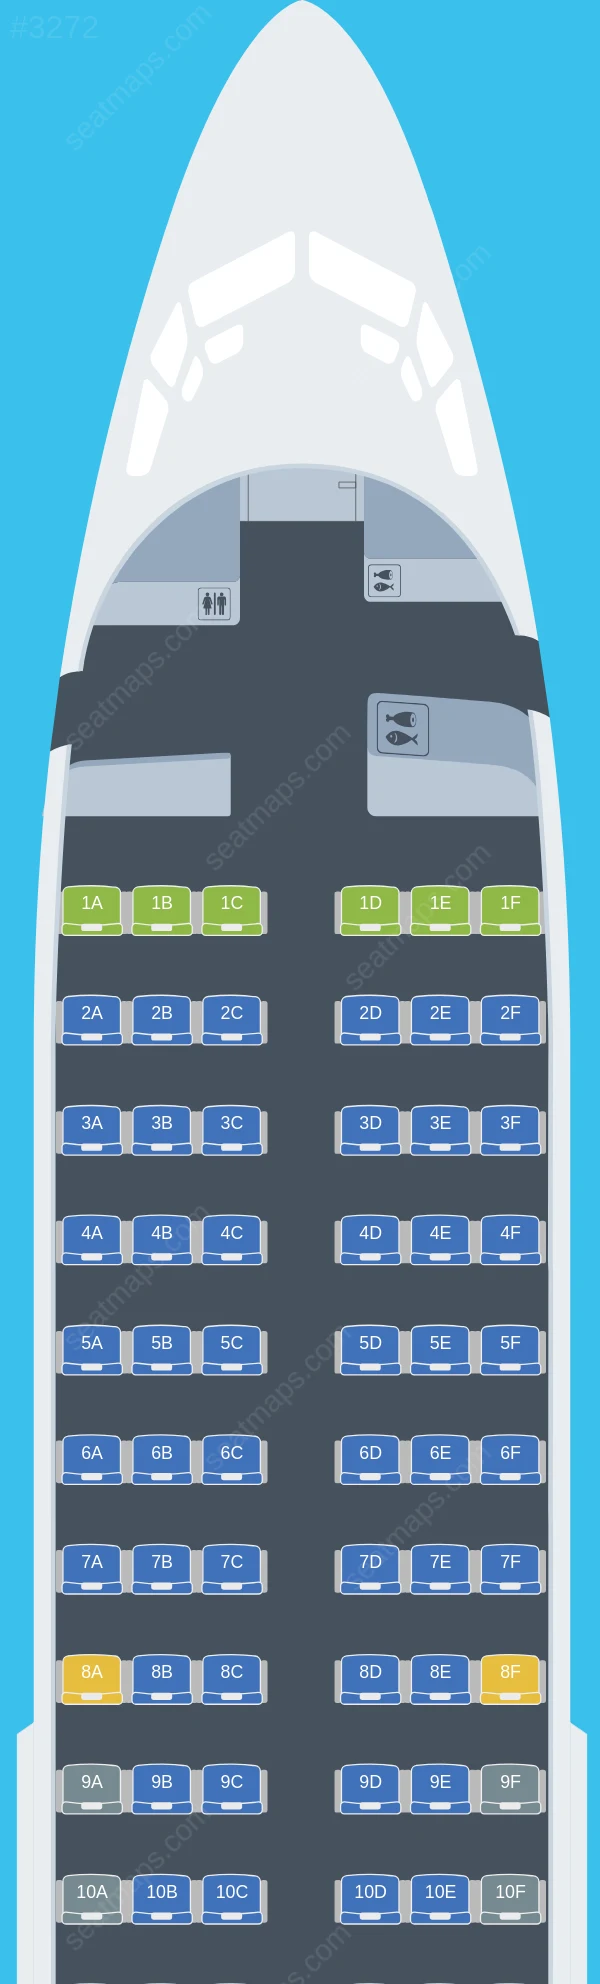 Transavia Boeing 737-700 seatmap preview